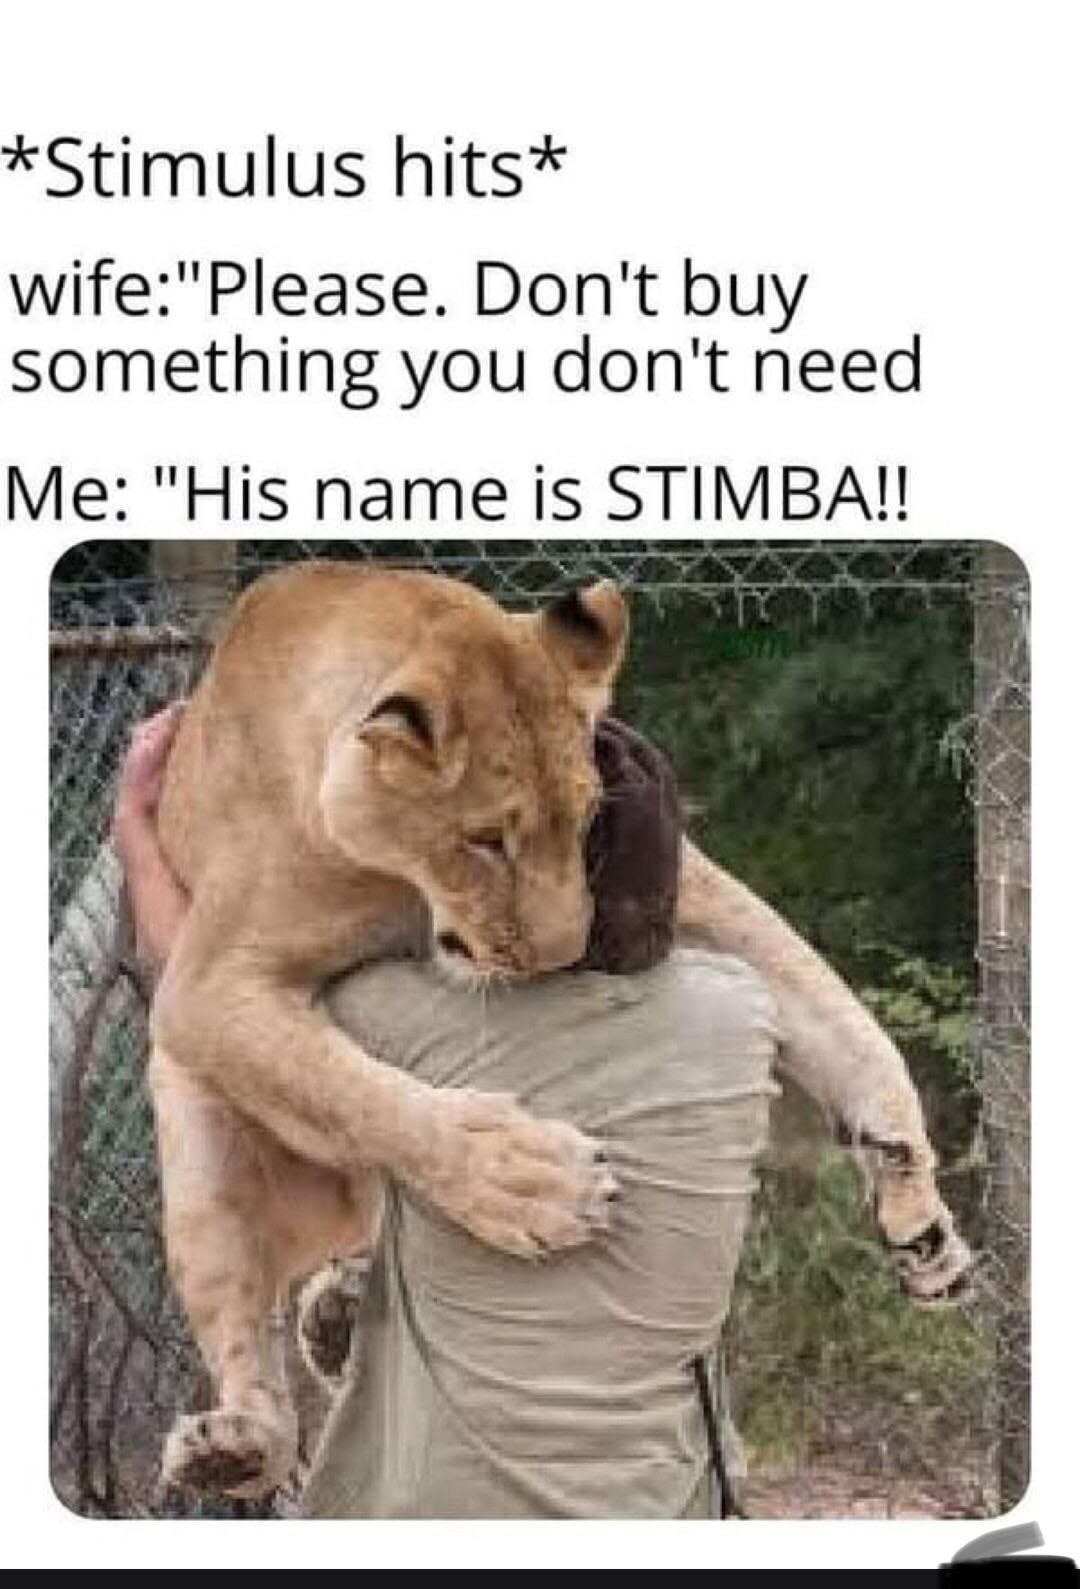 Not stimba